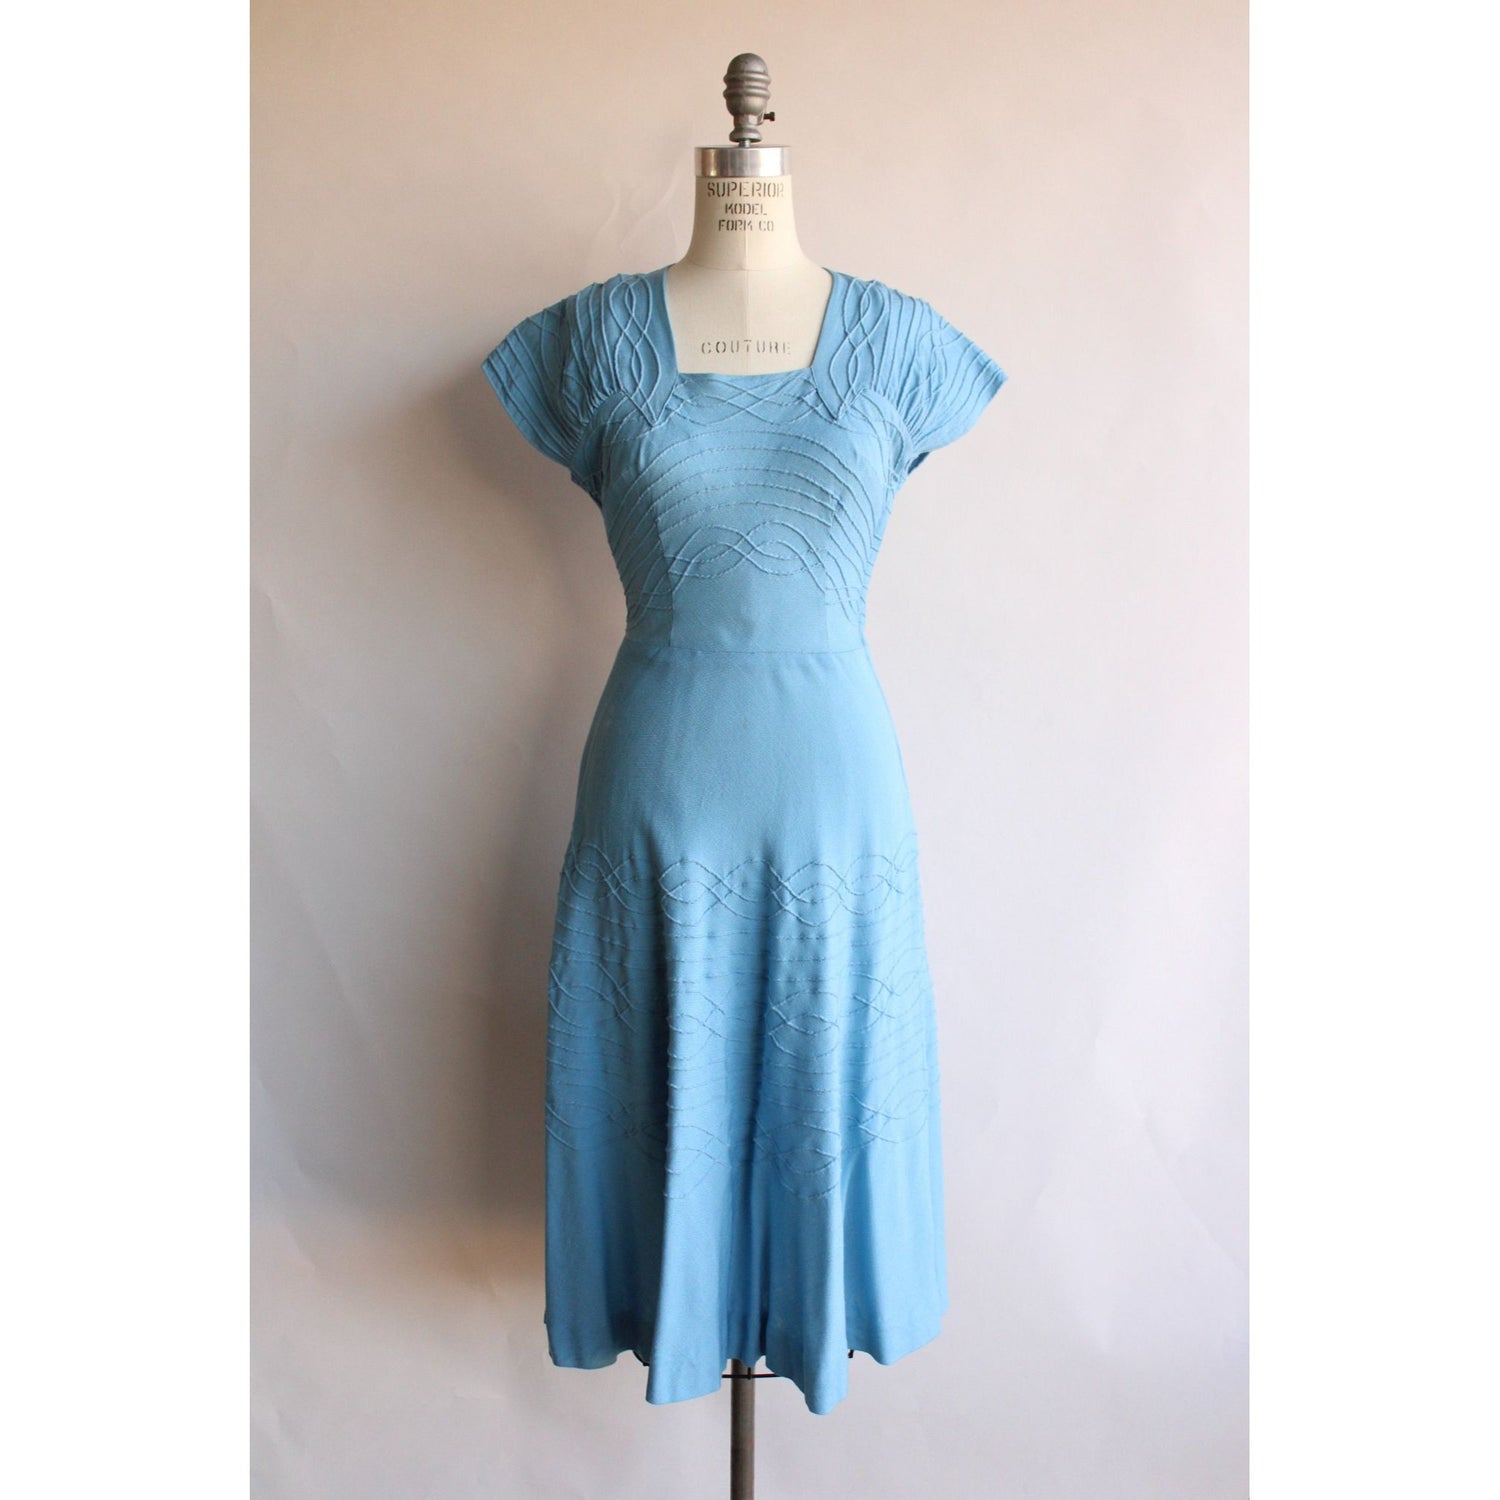 Vintage 1950s Louis Faruad Navy Blue Shift Dress – Vintage World Rocks